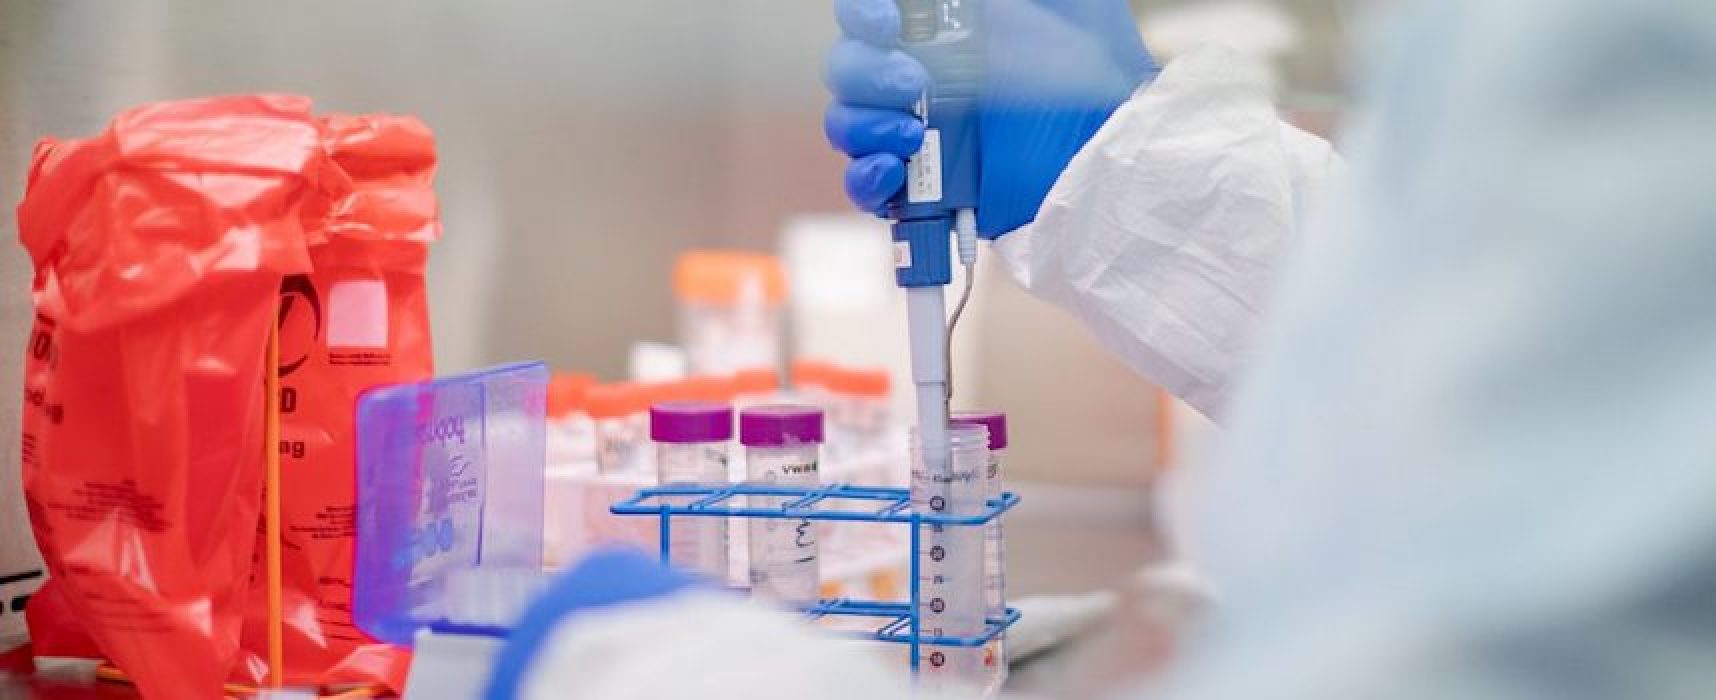 Aggiornamento Coronavirus: 2 nuovi casi nella Bat e 1 decesso